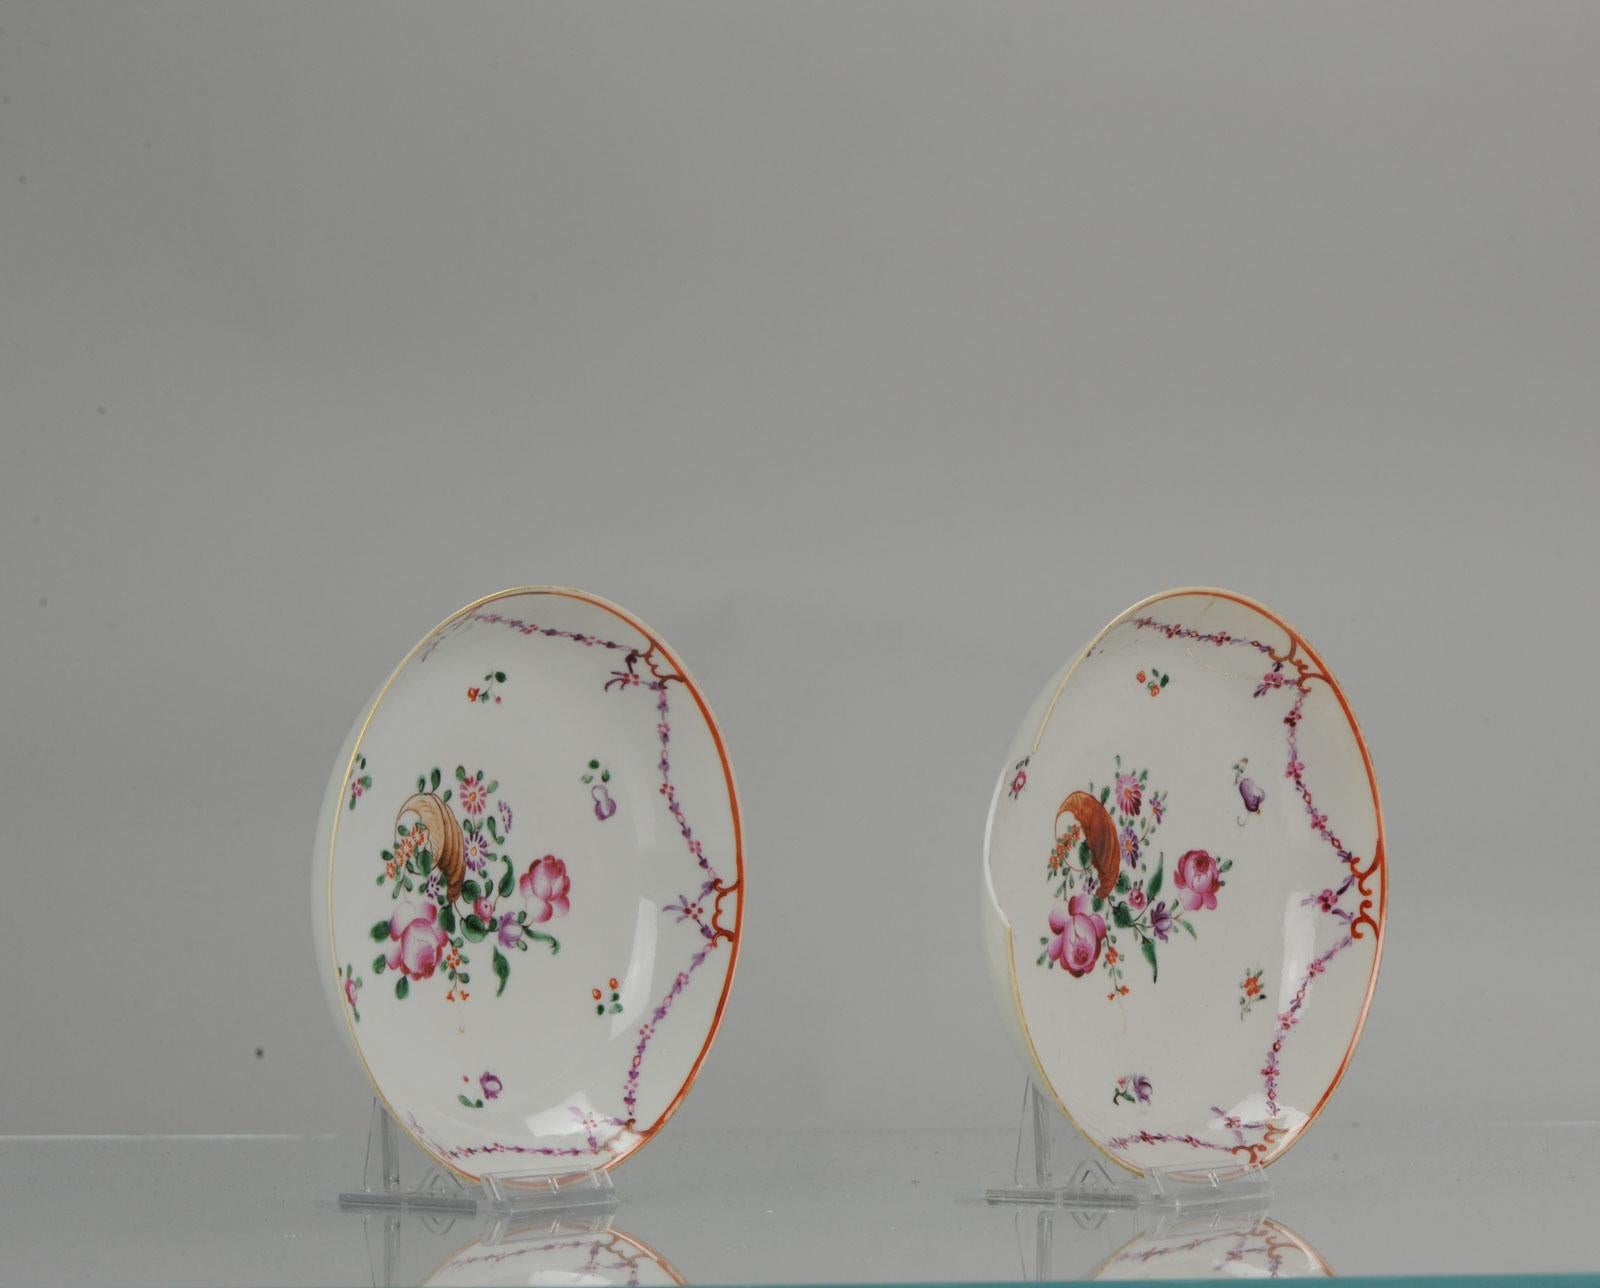 Une belle assiette chinoise ancienne, fabriquée pendant la période Qianlong. Entièrement décorée de fleurs et d'un coquillage central.

Informations complémentaires :
MATERIAL : Porcelaine et poterie
Type : Plaques
Région d'origine : Chine
Période :